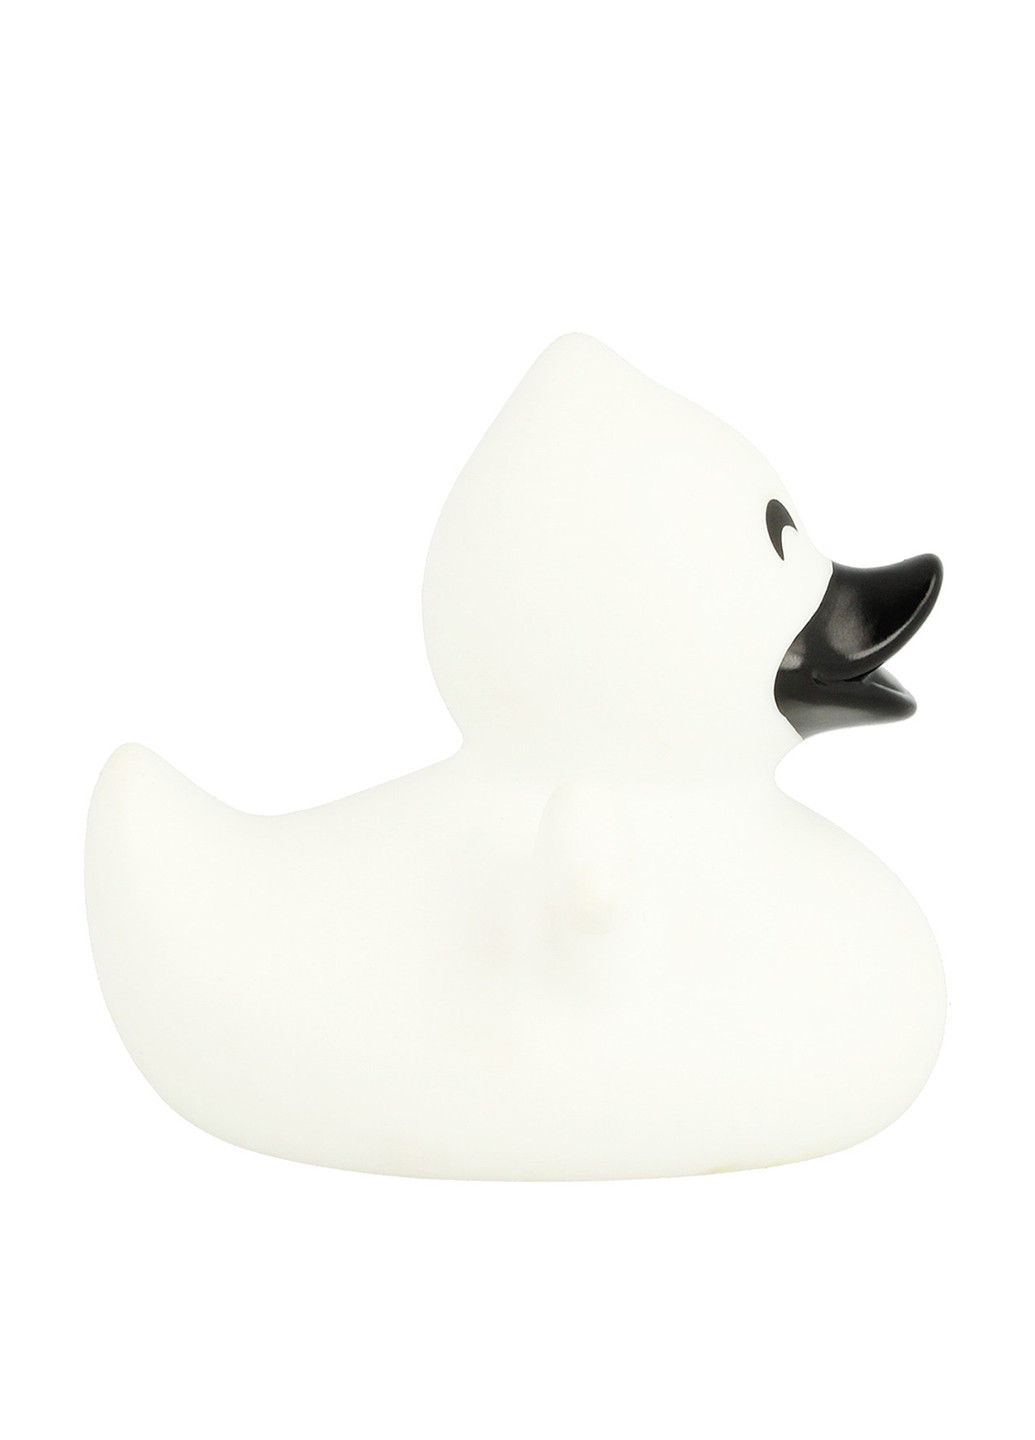 Іграшка для купання Качка Привид, 8,5x8,5x7,5 см Funny Ducks (250618795)